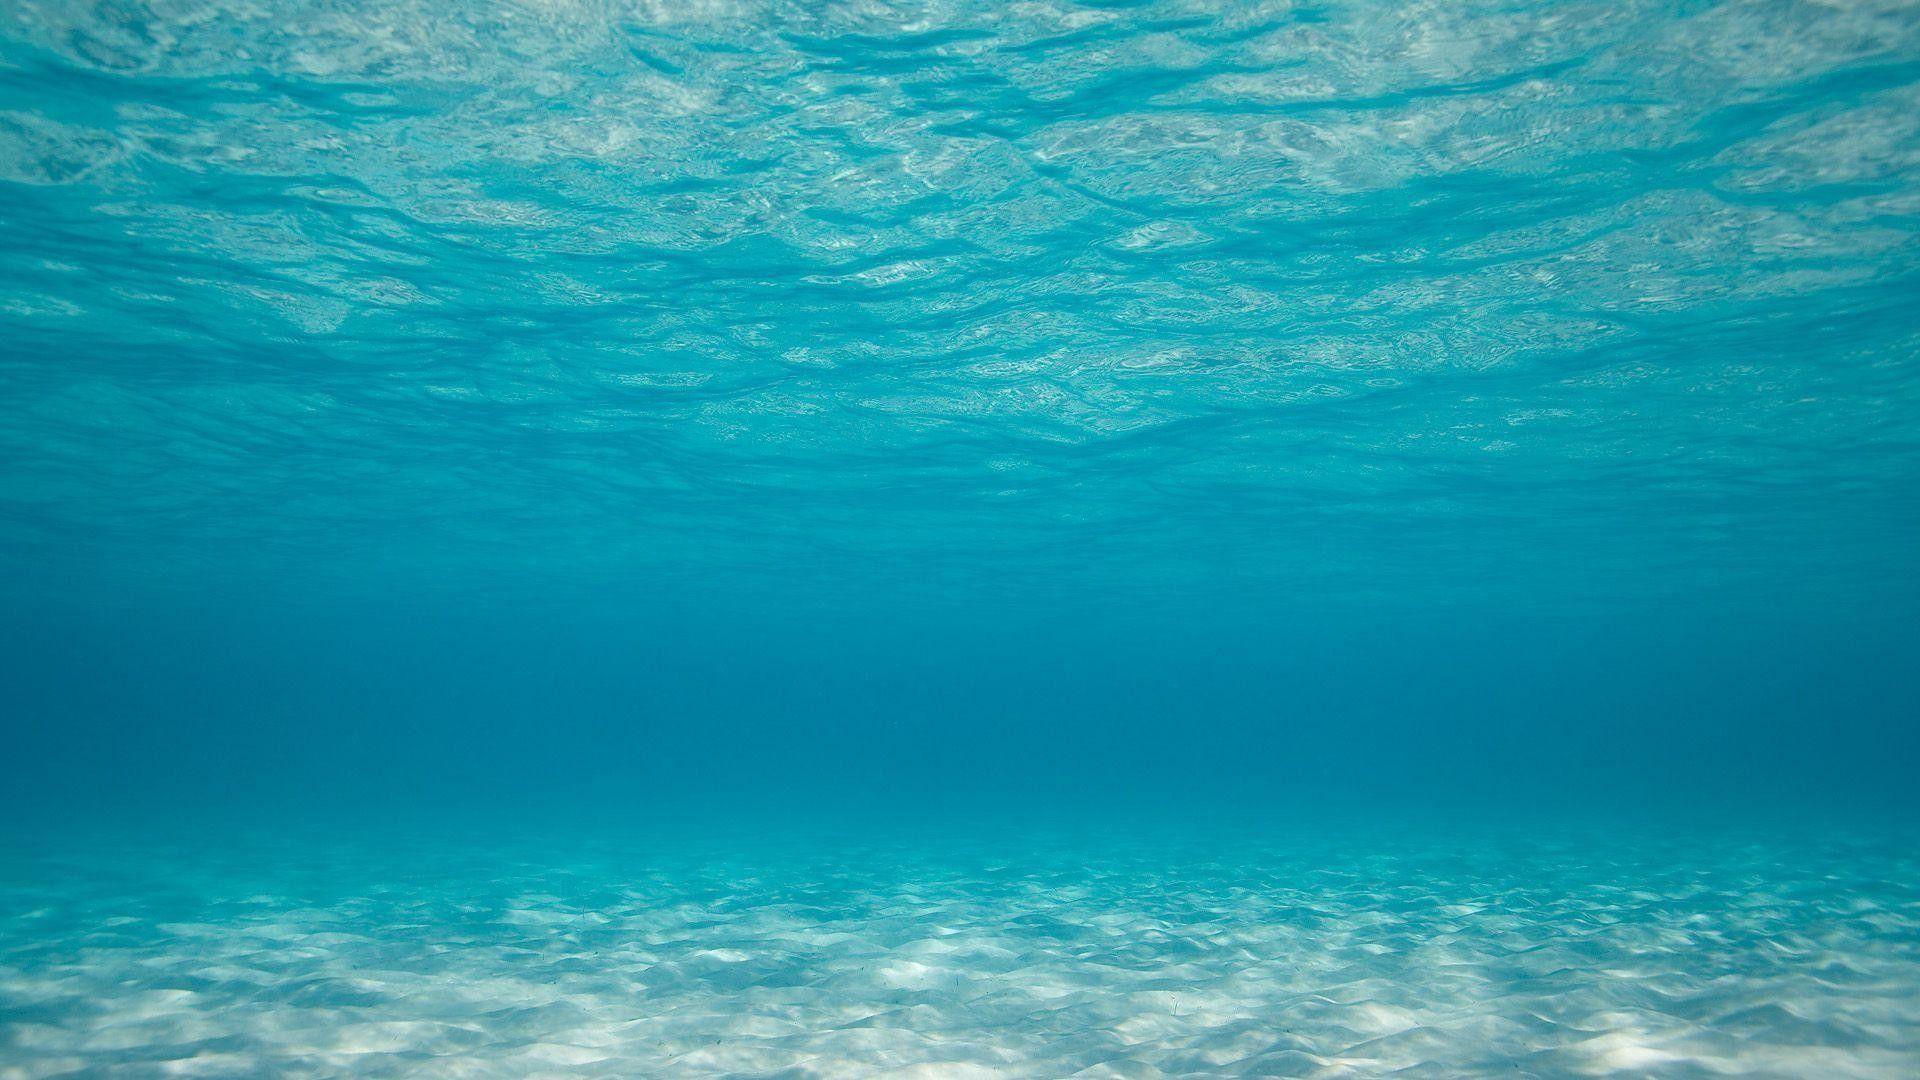 Không gian dưới nước luôn được xem là một thế giới kỳ lạ và đầy sức hút với sự đa dạng của loài vật sinh sống. Hình nền Tumblr về dưới nước sẽ mang đến cho bạn sự trầm lắng và cảm giác thoải mái cho ngày mới.